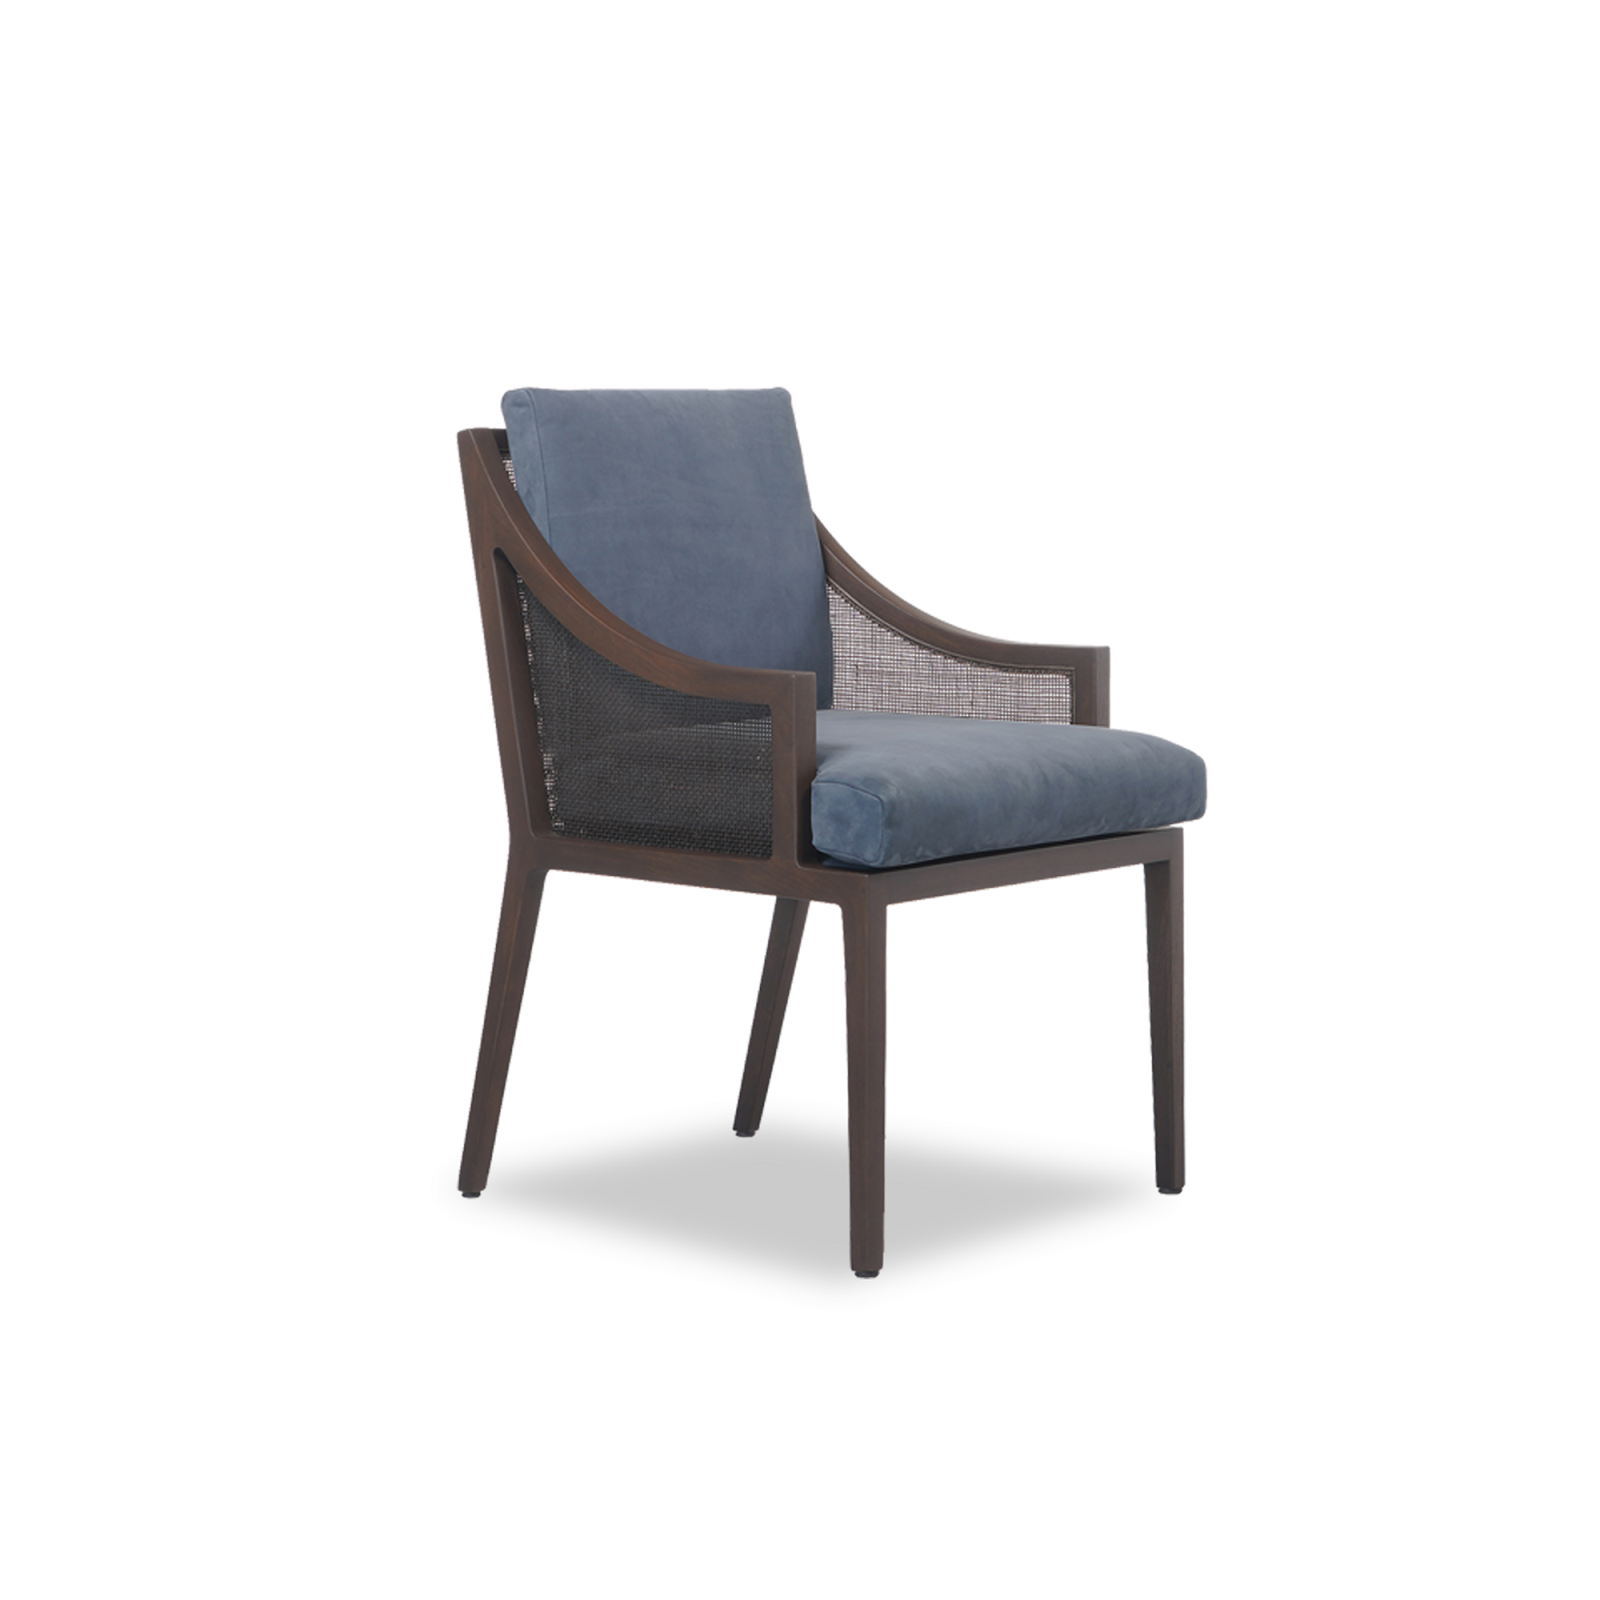 mavi döşemeli ve kahverengi ahşap ayaklardan oluşan toulouse sandalye.